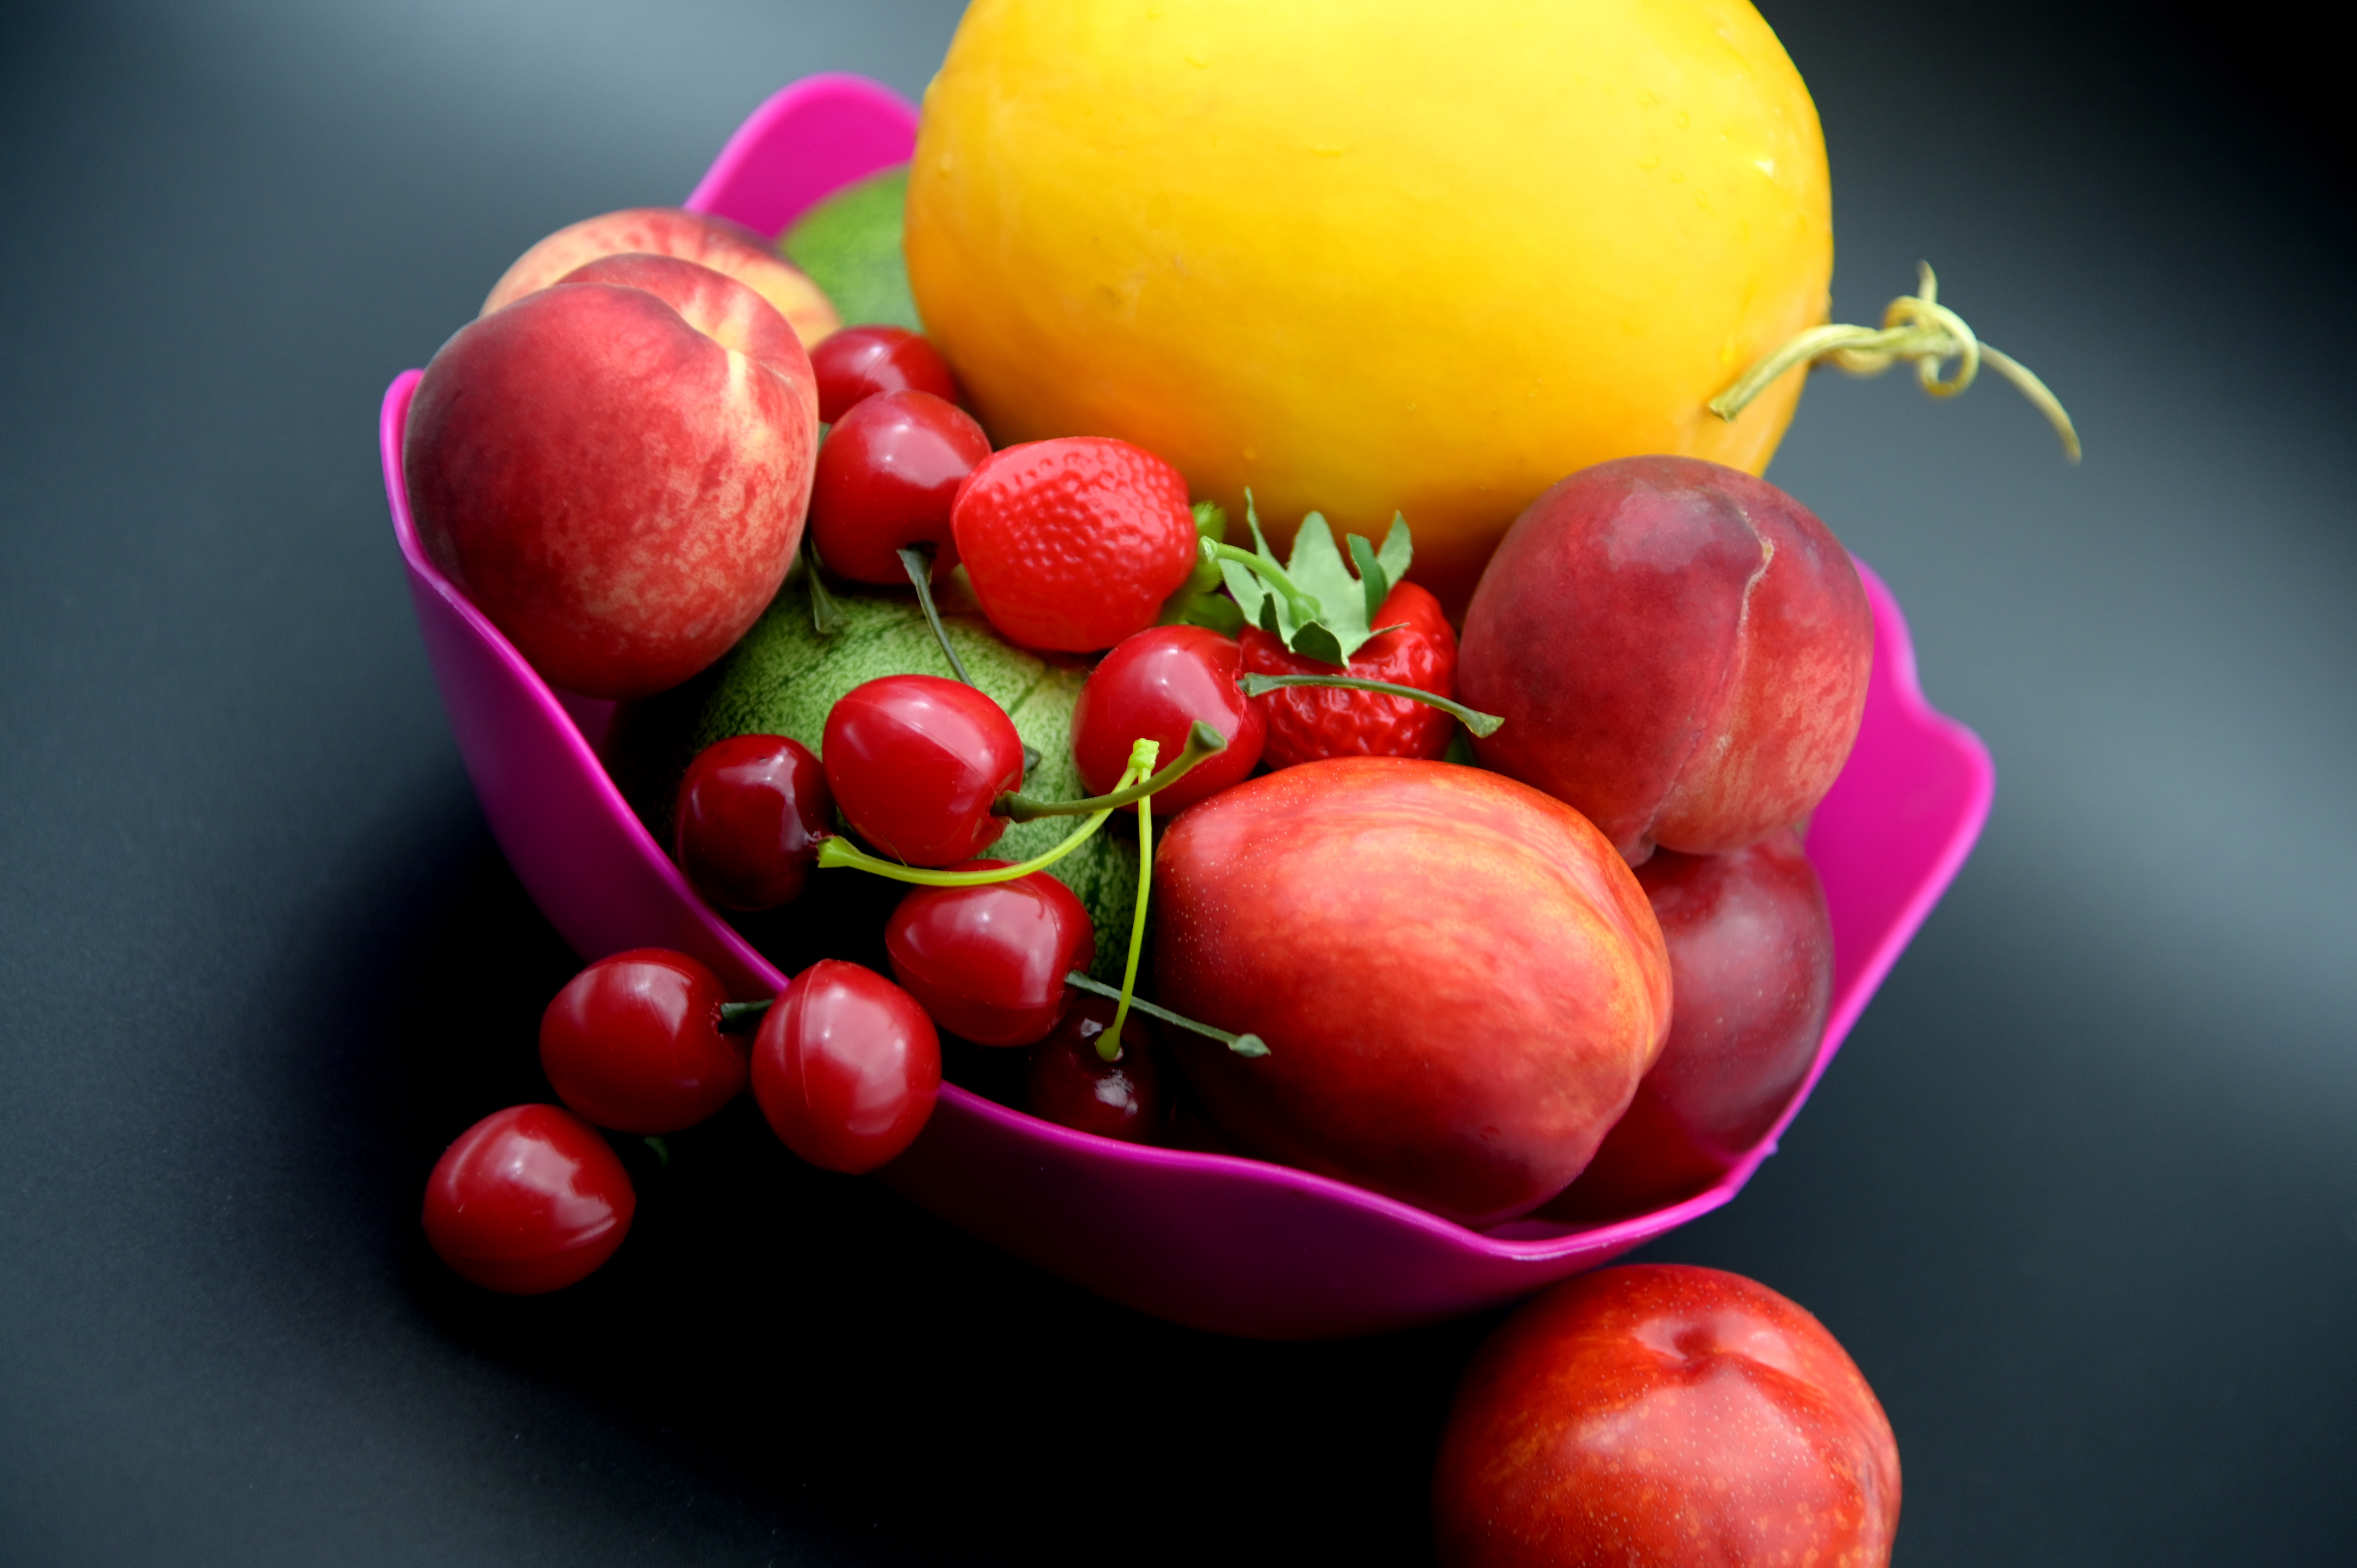 水果 植物 成熟的 果实 收获 甜的 酸的 美味 食物 食品 食材 有机